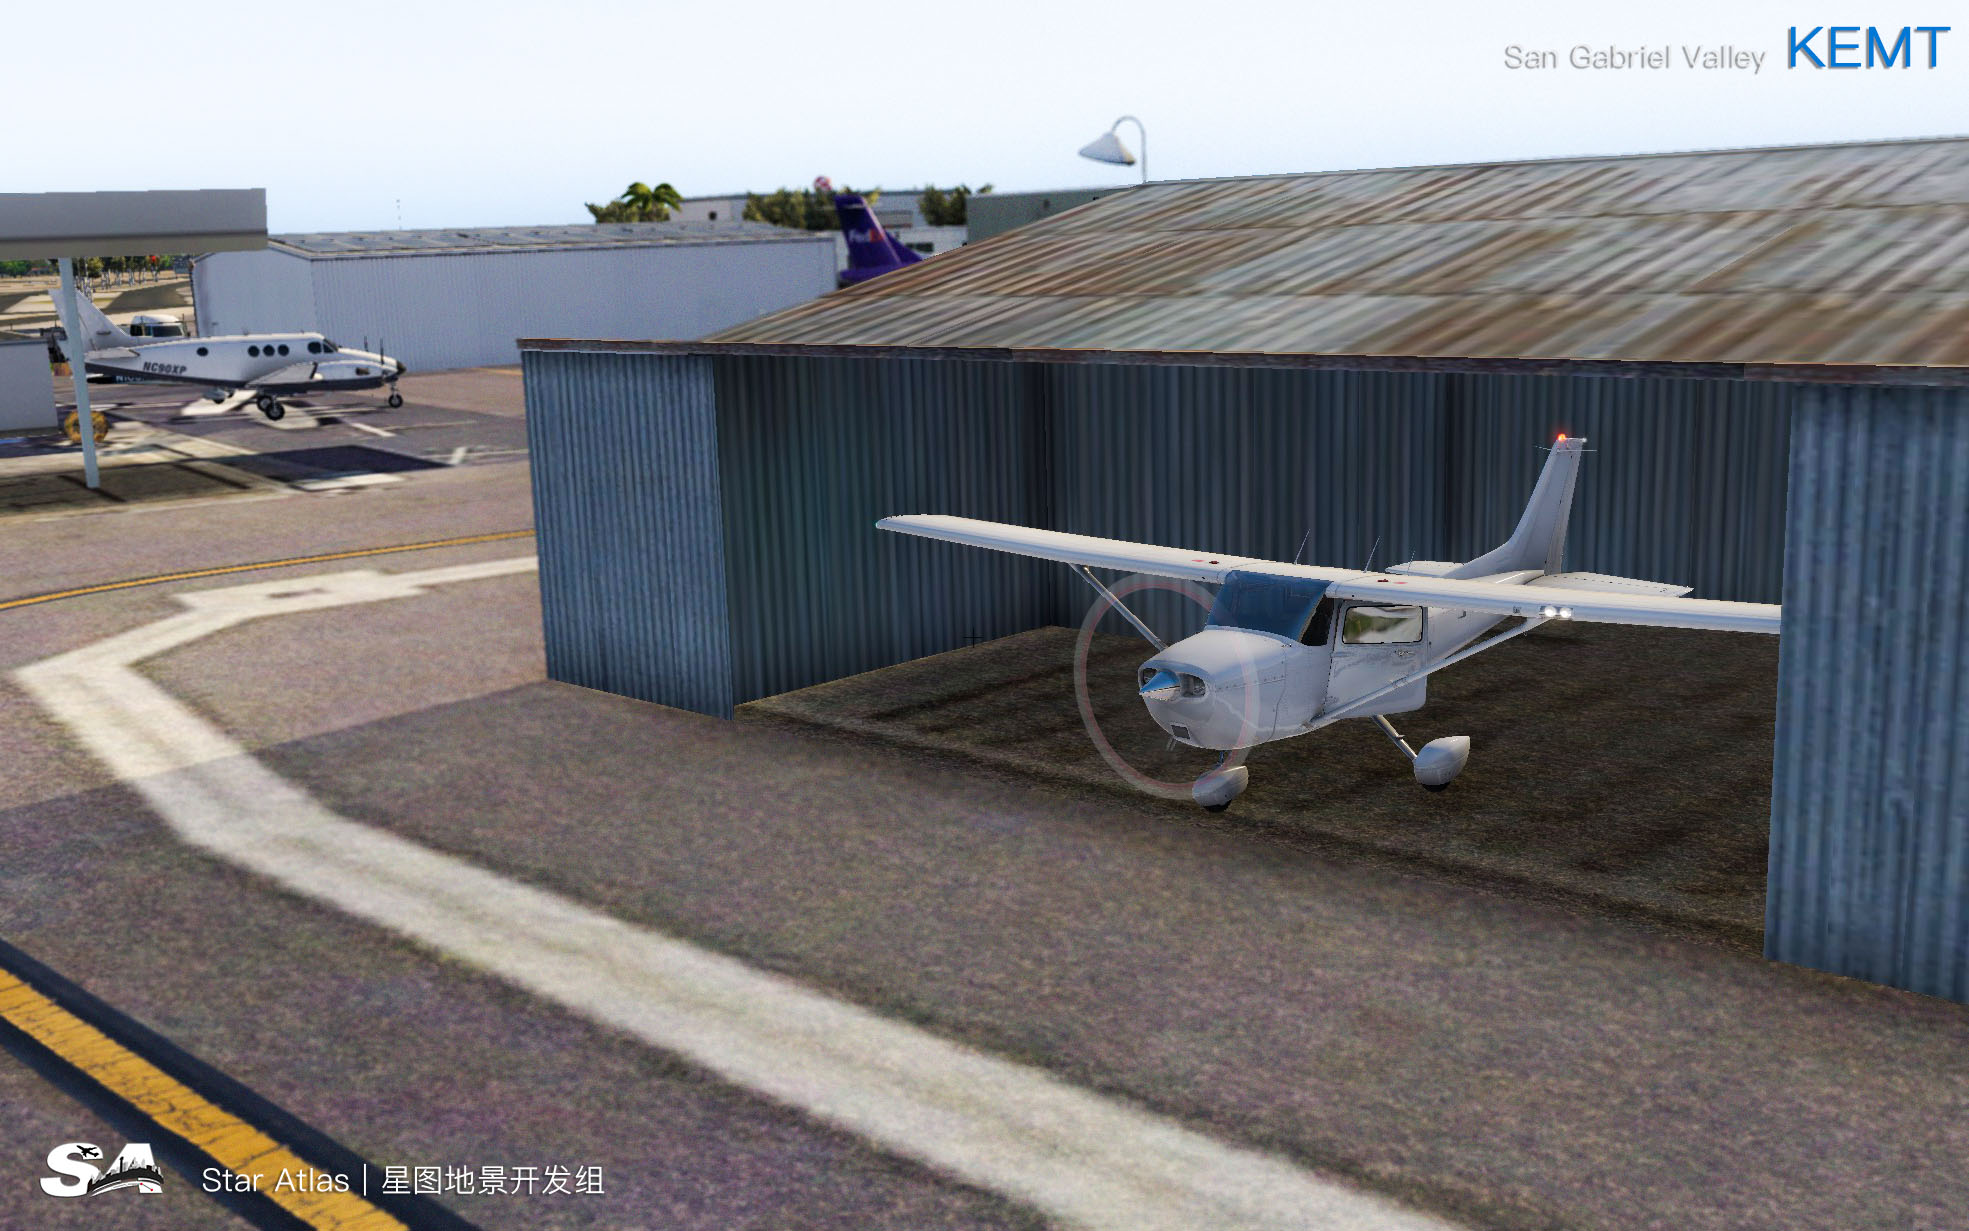 【X-Plane】KEMT-圣盖博谷机场 HD 1.0-2149 